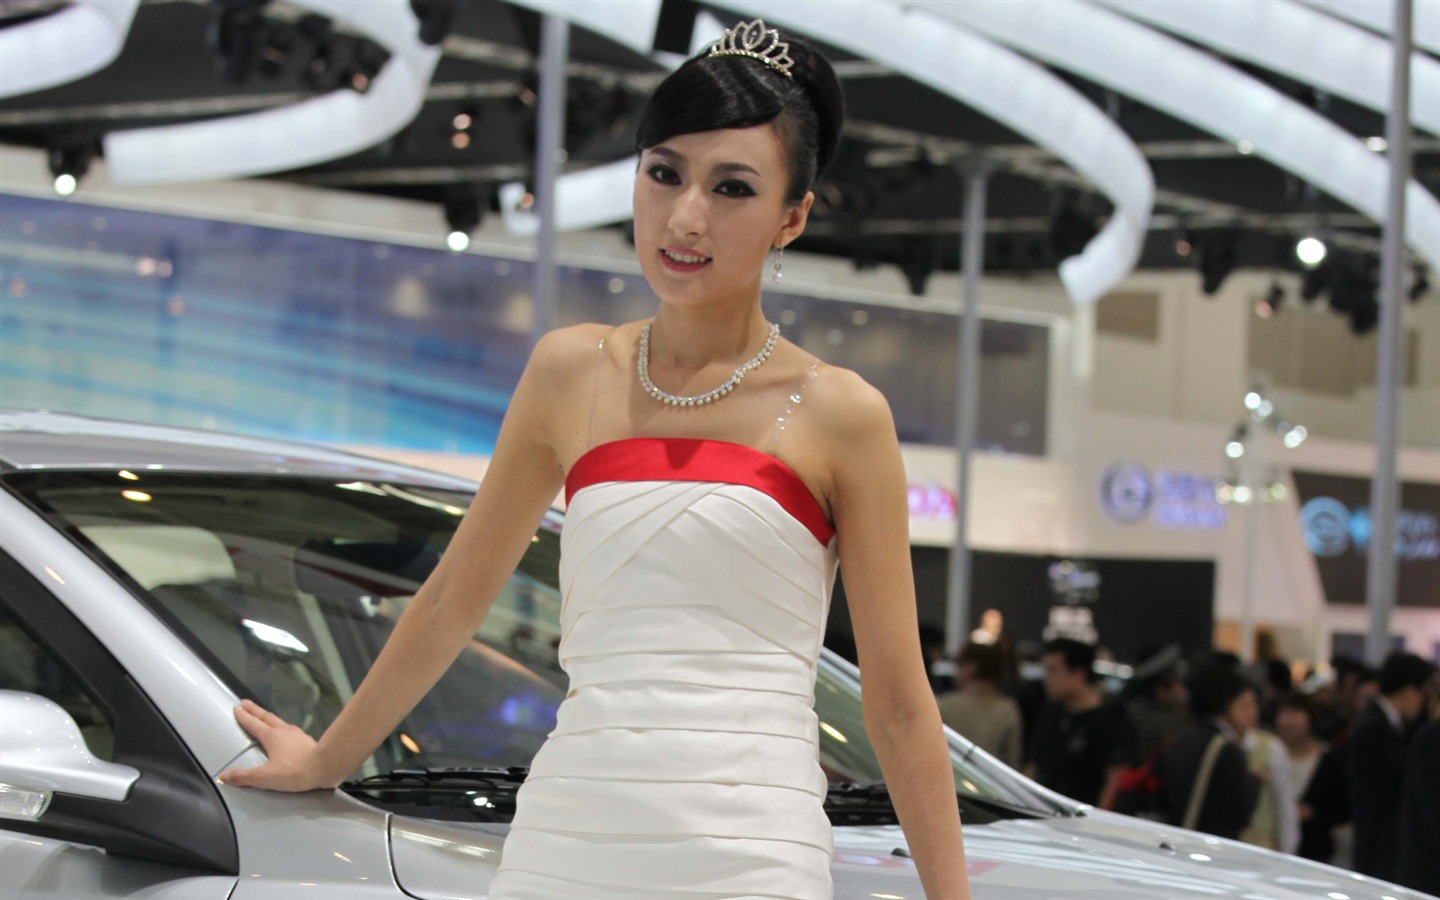 2010 v Pekingu Mezinárodním autosalonu krása (1) (vítr honí mraky práce) #39 - 1440x900